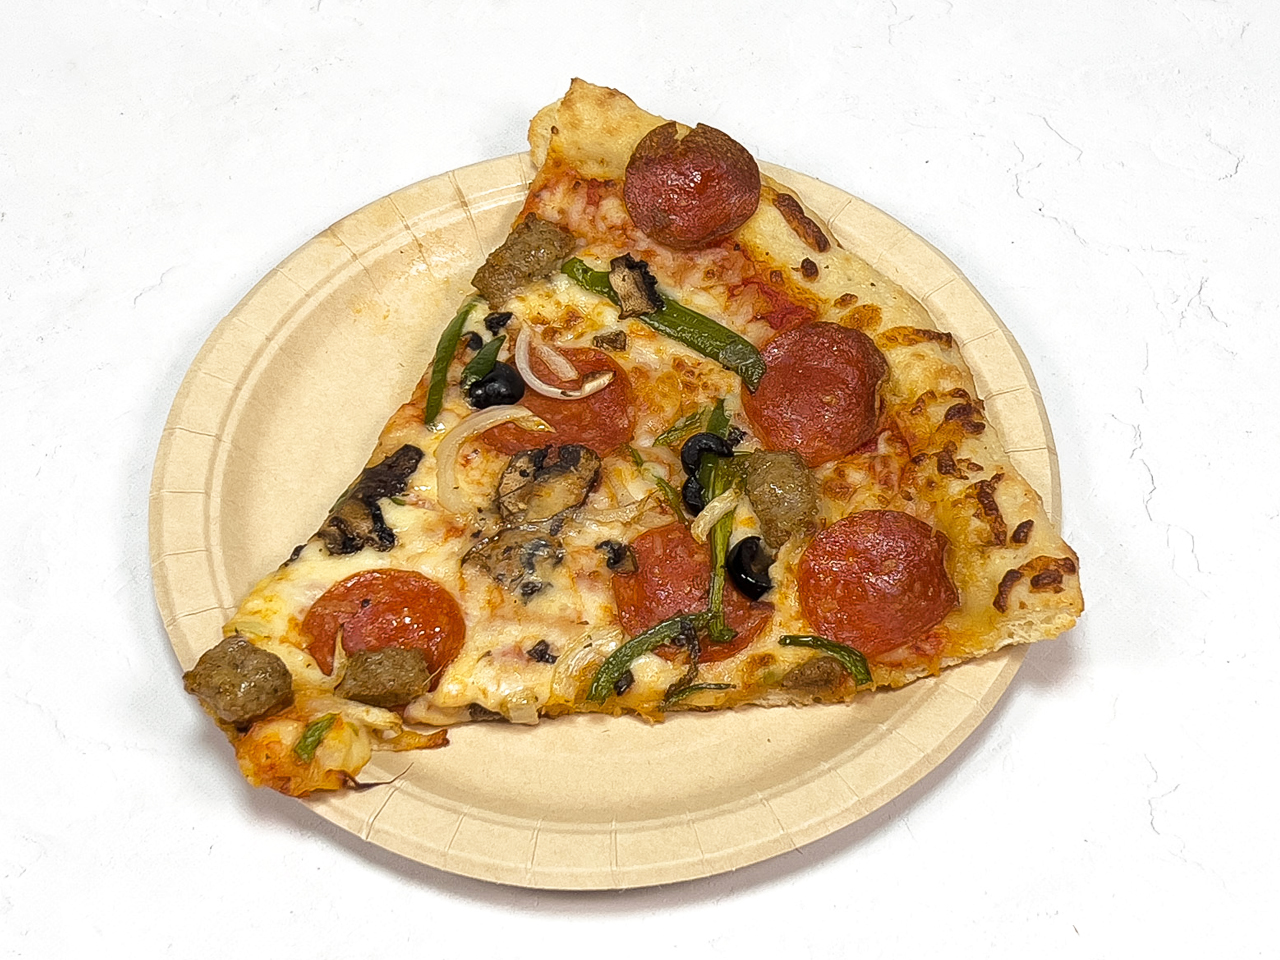 コストコフードコートのピザ3種類の味レビュー 購入時の注意点も